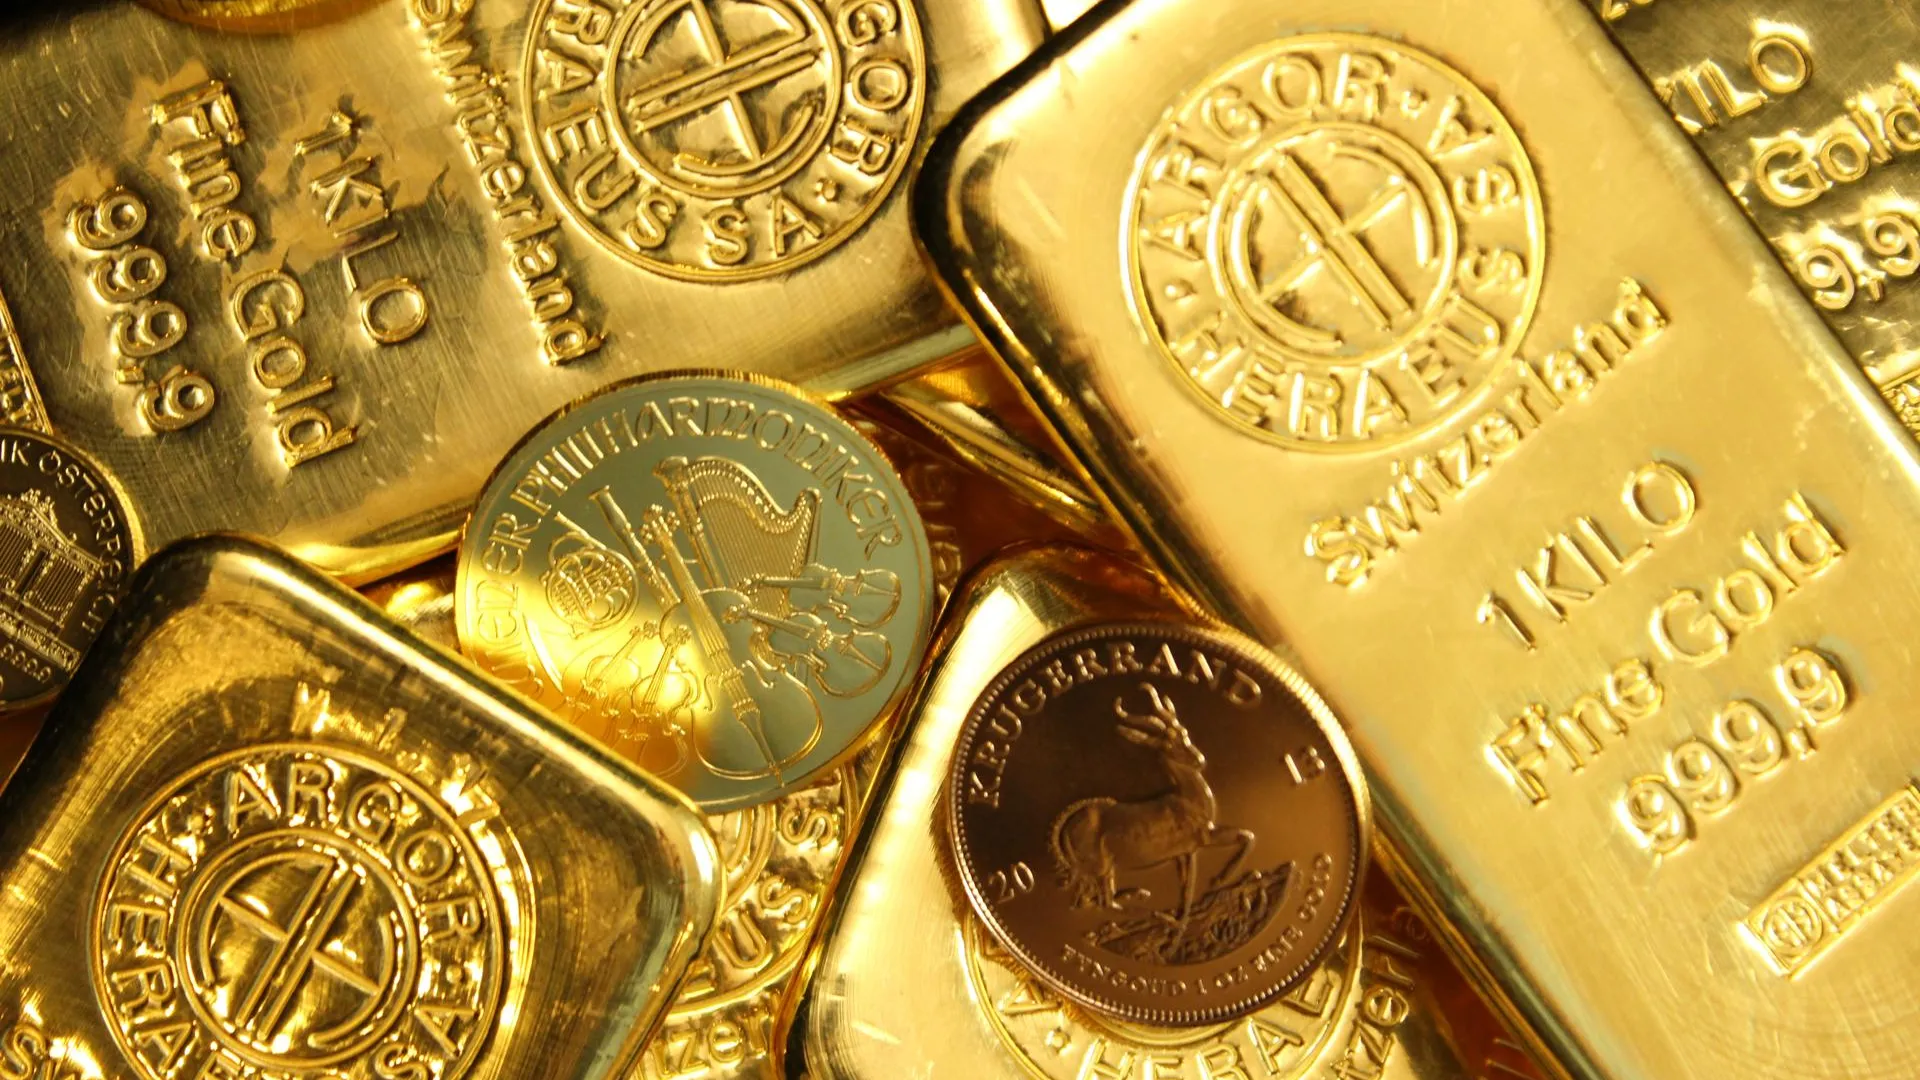 Эксперт Кокорева спрогнозировала падение цен на золото до $2250 к концу года